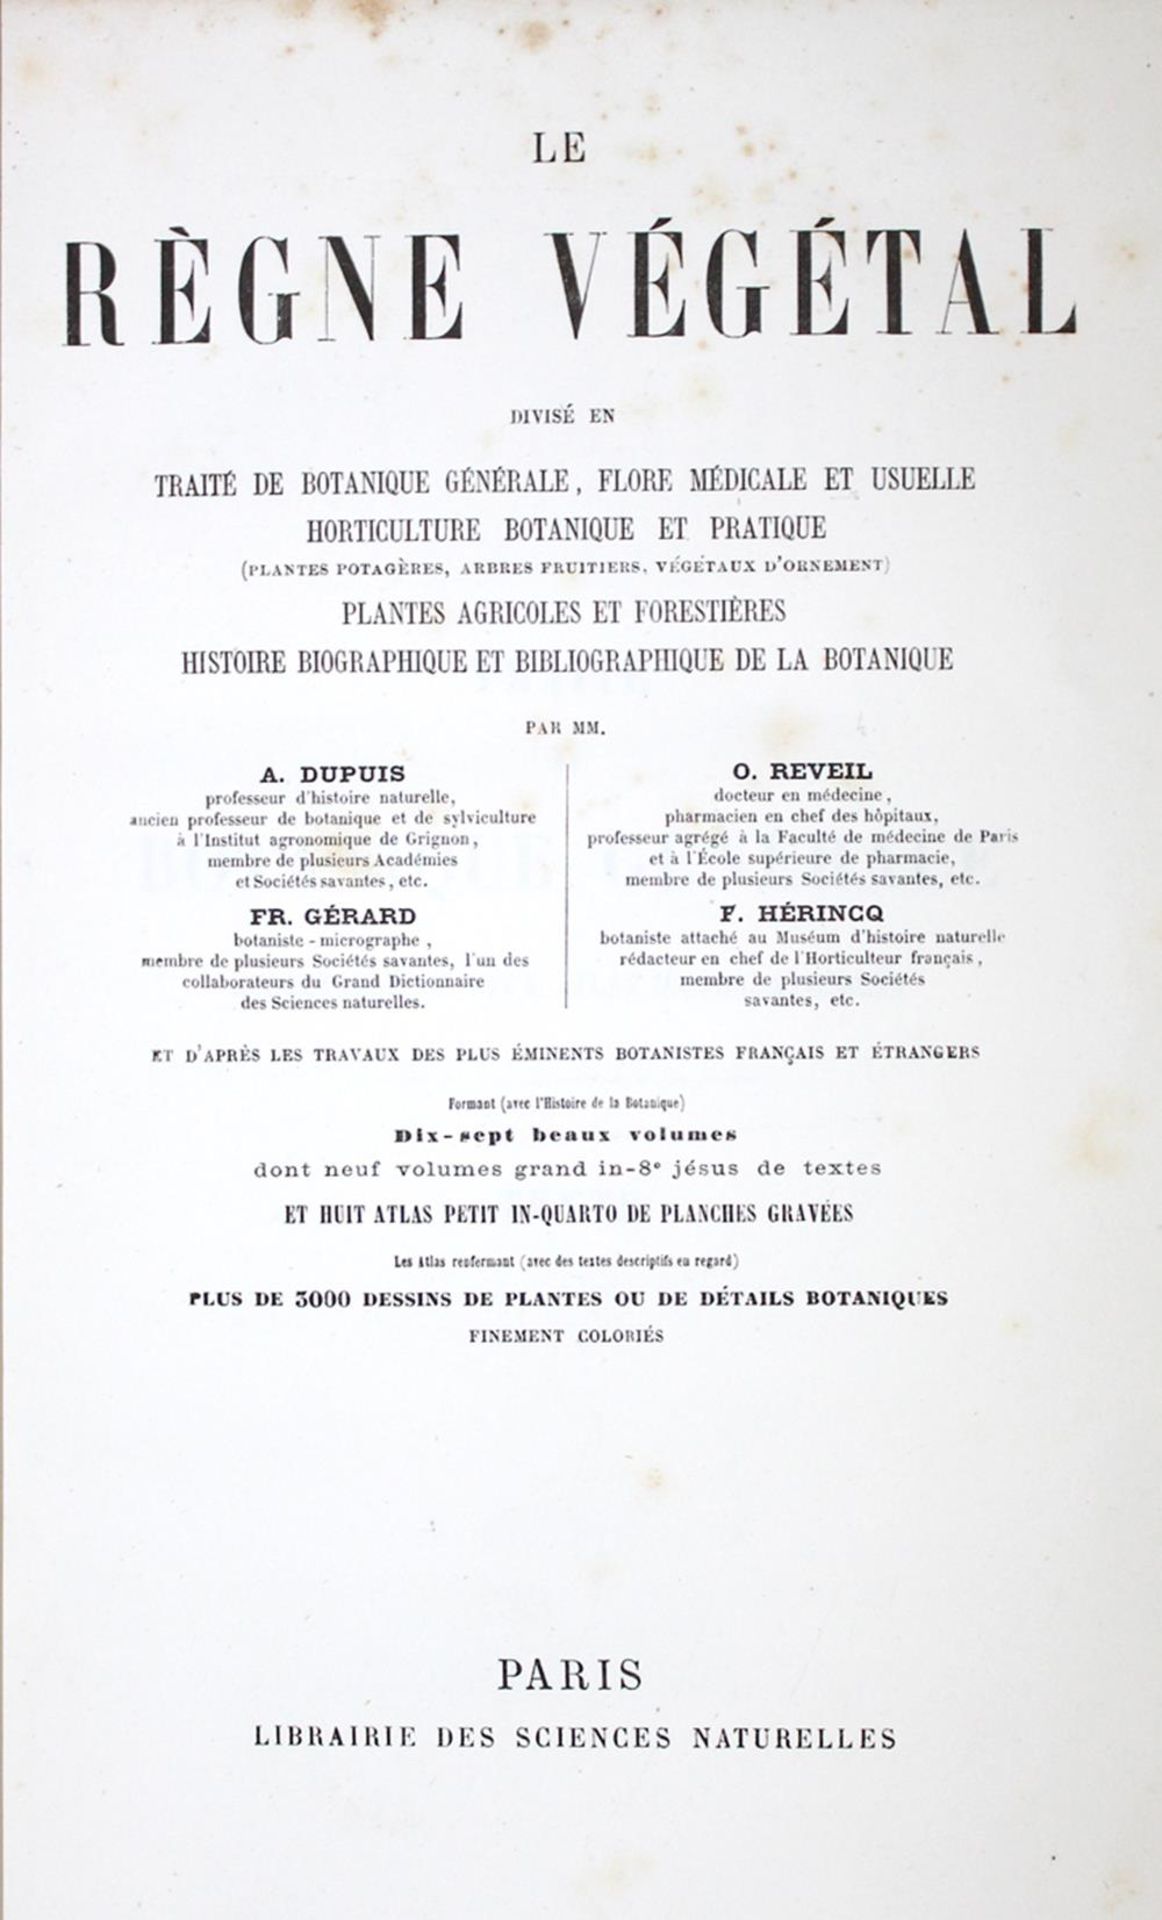 Dupuis,A.Dupuis,A. Le regne vegetal. 16 Bde. (8 Text-, 8 Tafelbde.). Paris, Morgand (18Dupu